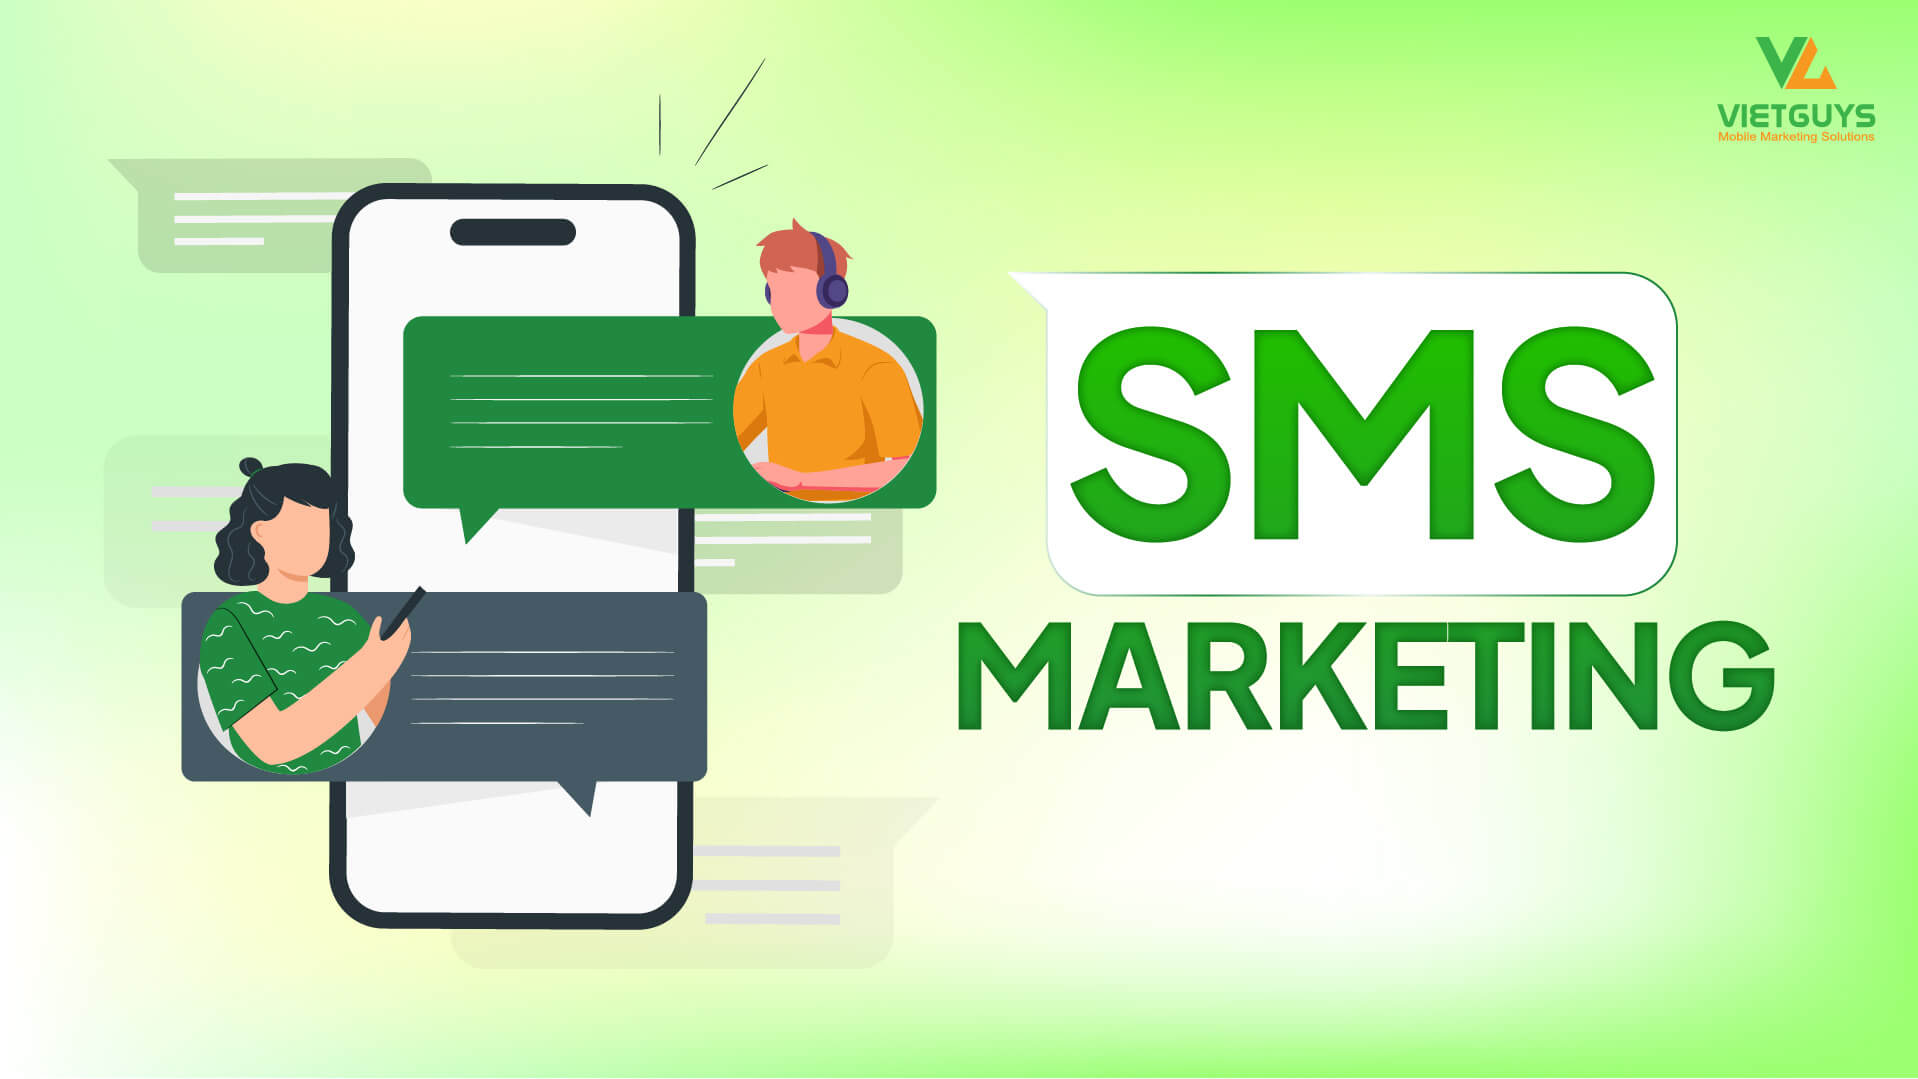 7 lợi ích của SMS Marketing và ứng dụng cho các ngành hàng